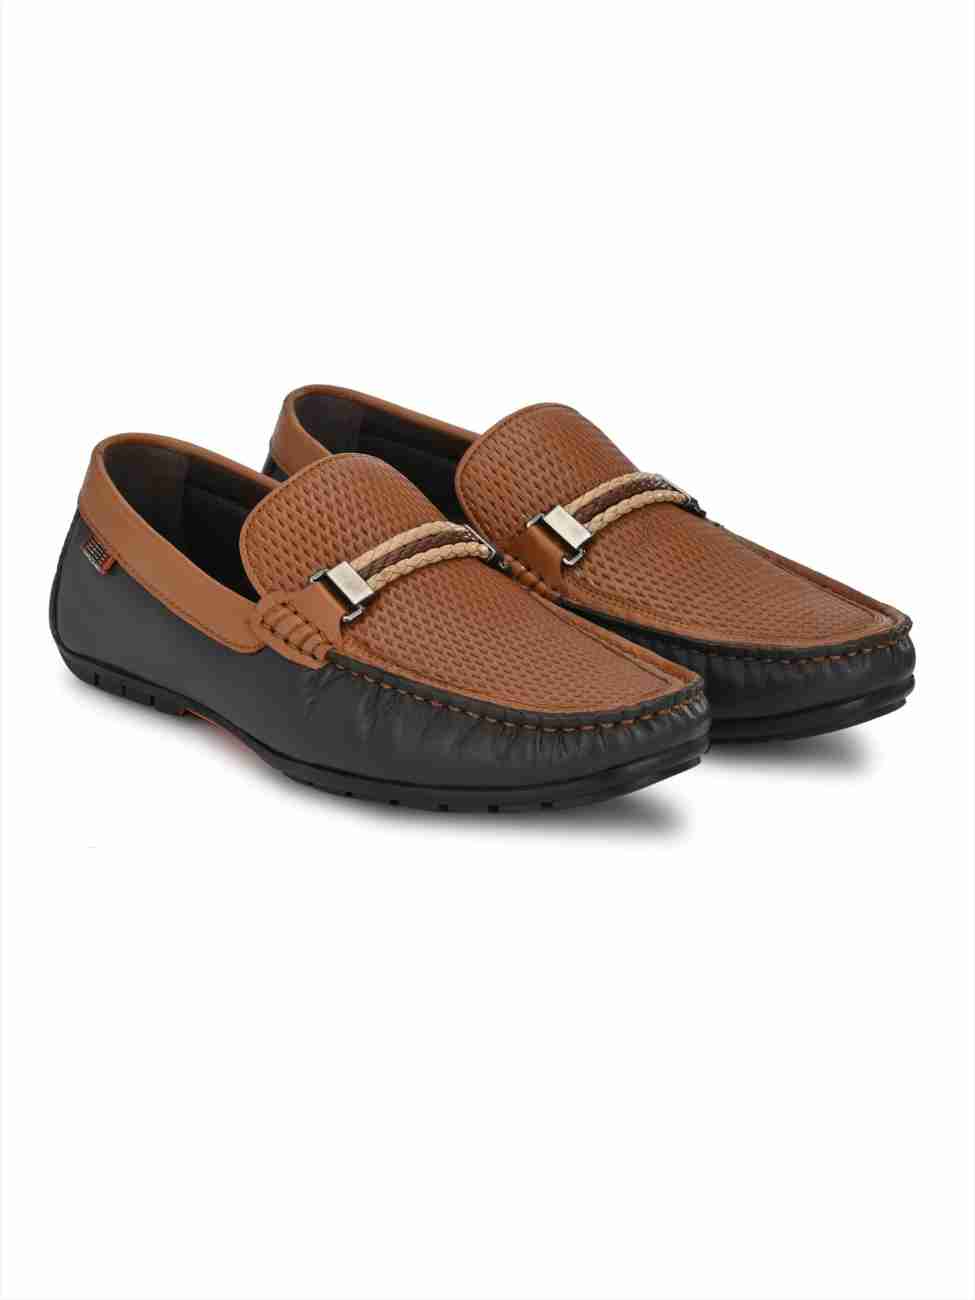 Hitz Men's Tan Leather Half Shoes Flat Mule Loafers – Hitz Shoes Online